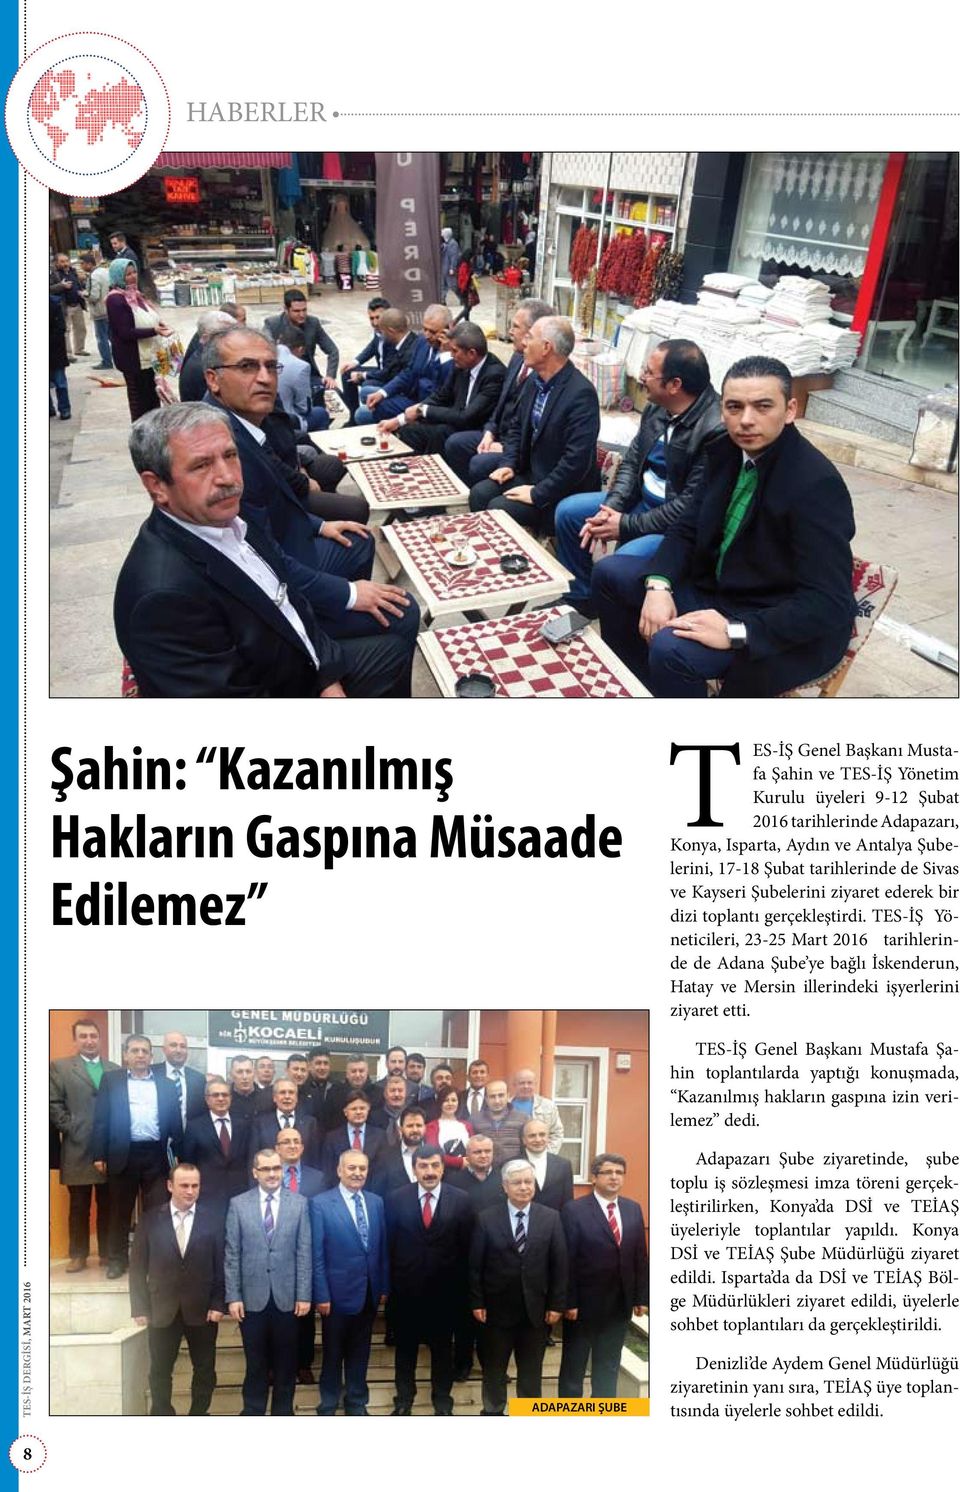 TES-İŞ Yöneticileri, 23-25 Mart 2016 tarihlerinde de Adana Şube ye bağlı İskenderun, Hatay ve Mersin illerindeki işyerlerini ziyaret etti.